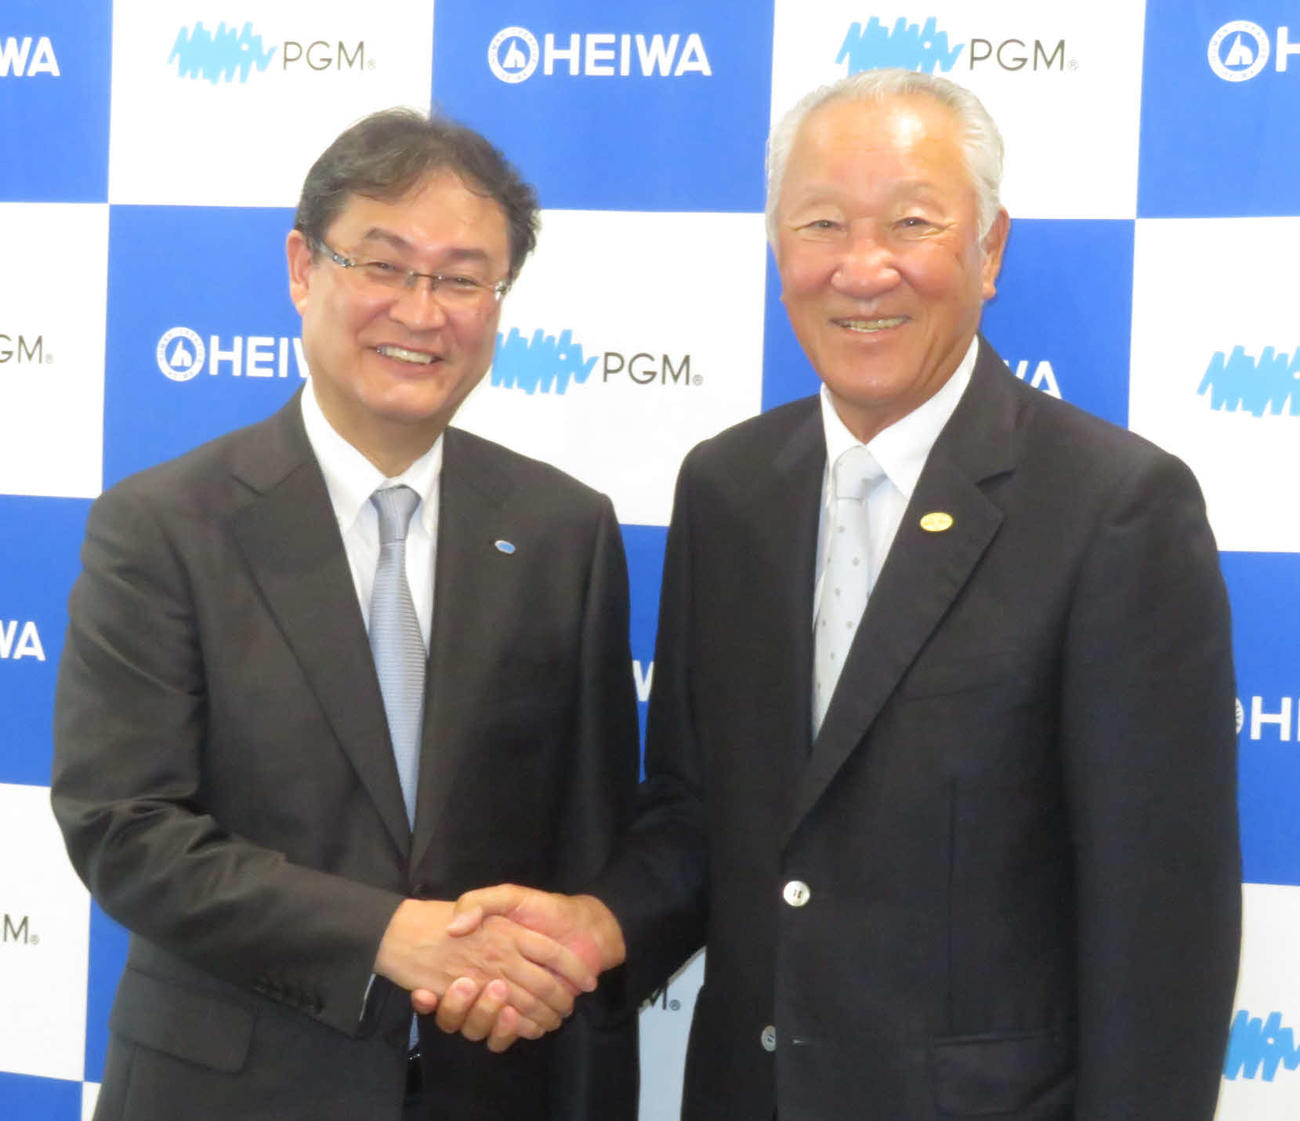 会見後に笑顔で握手を交わすJGTOの青木会長（右）と、パシフィックゴルフマネージメントの田中社長